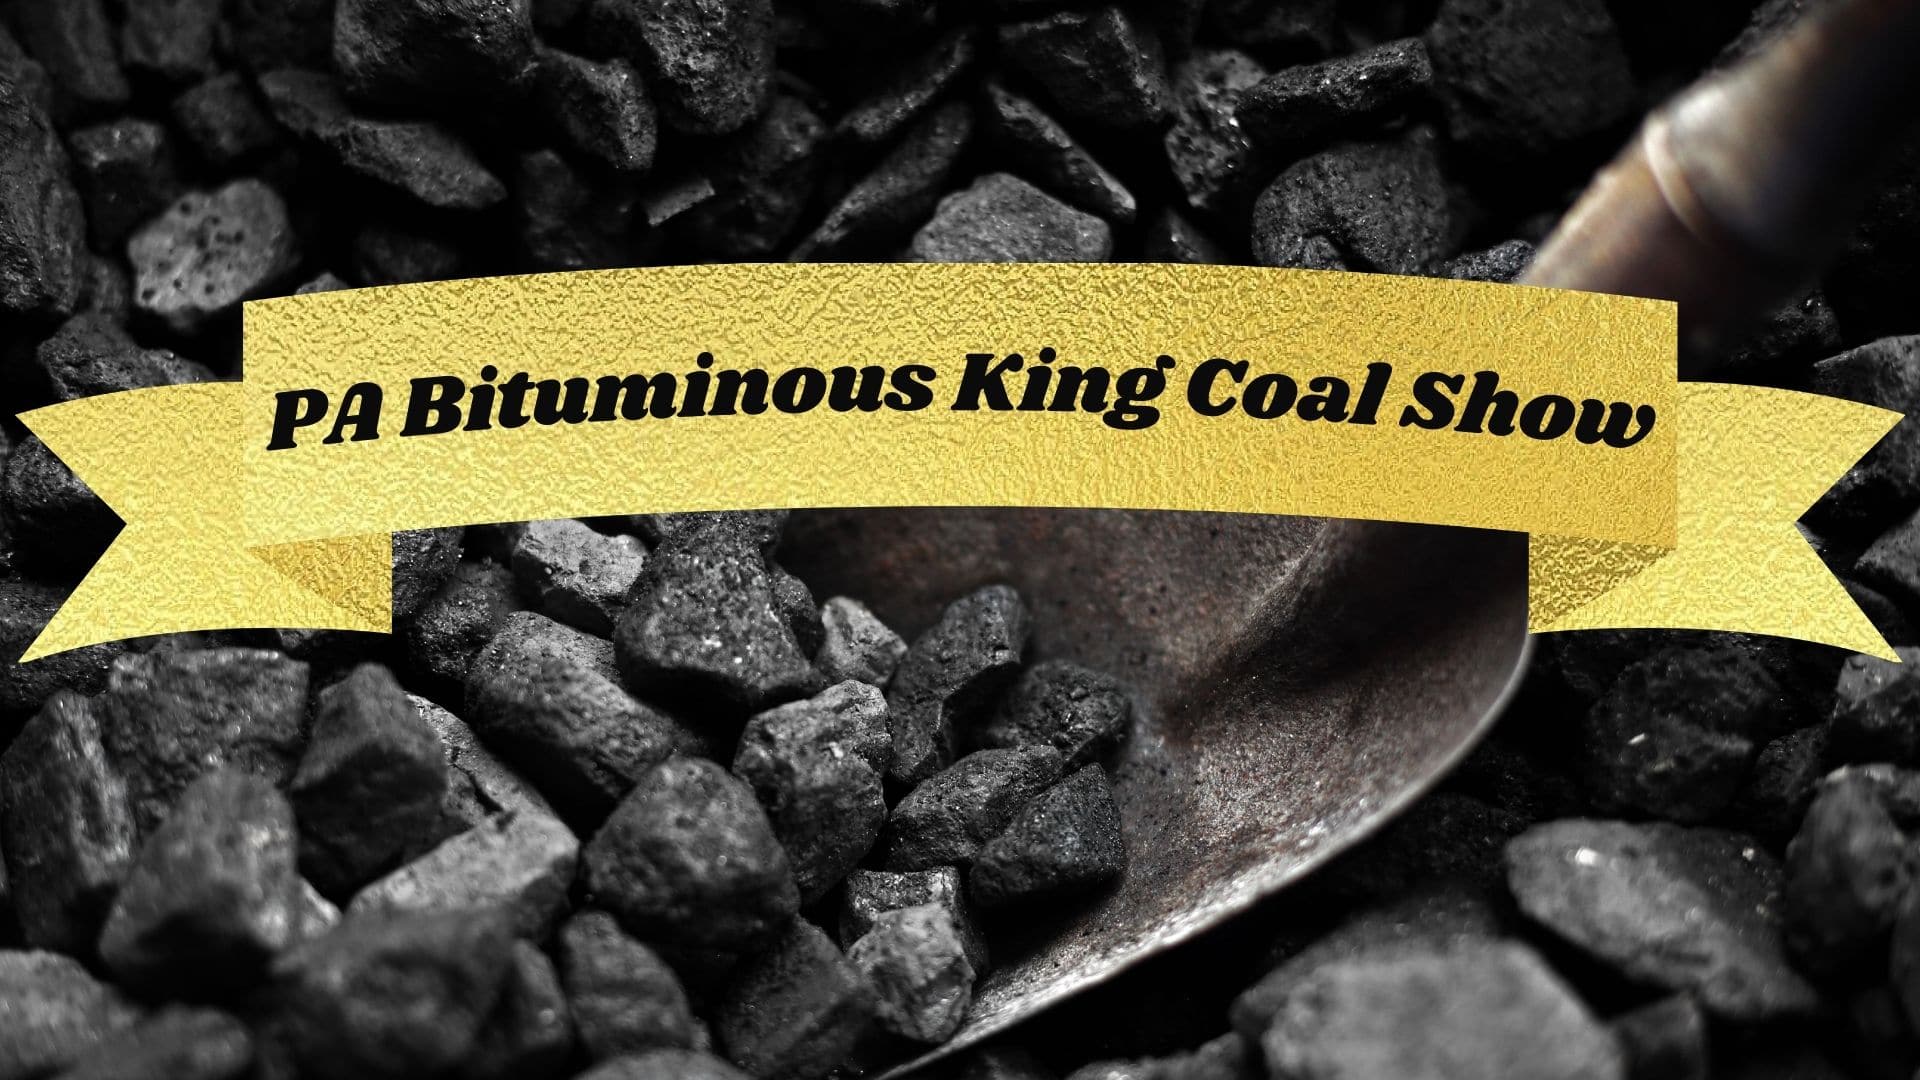 PA Bituminous King Coal Show